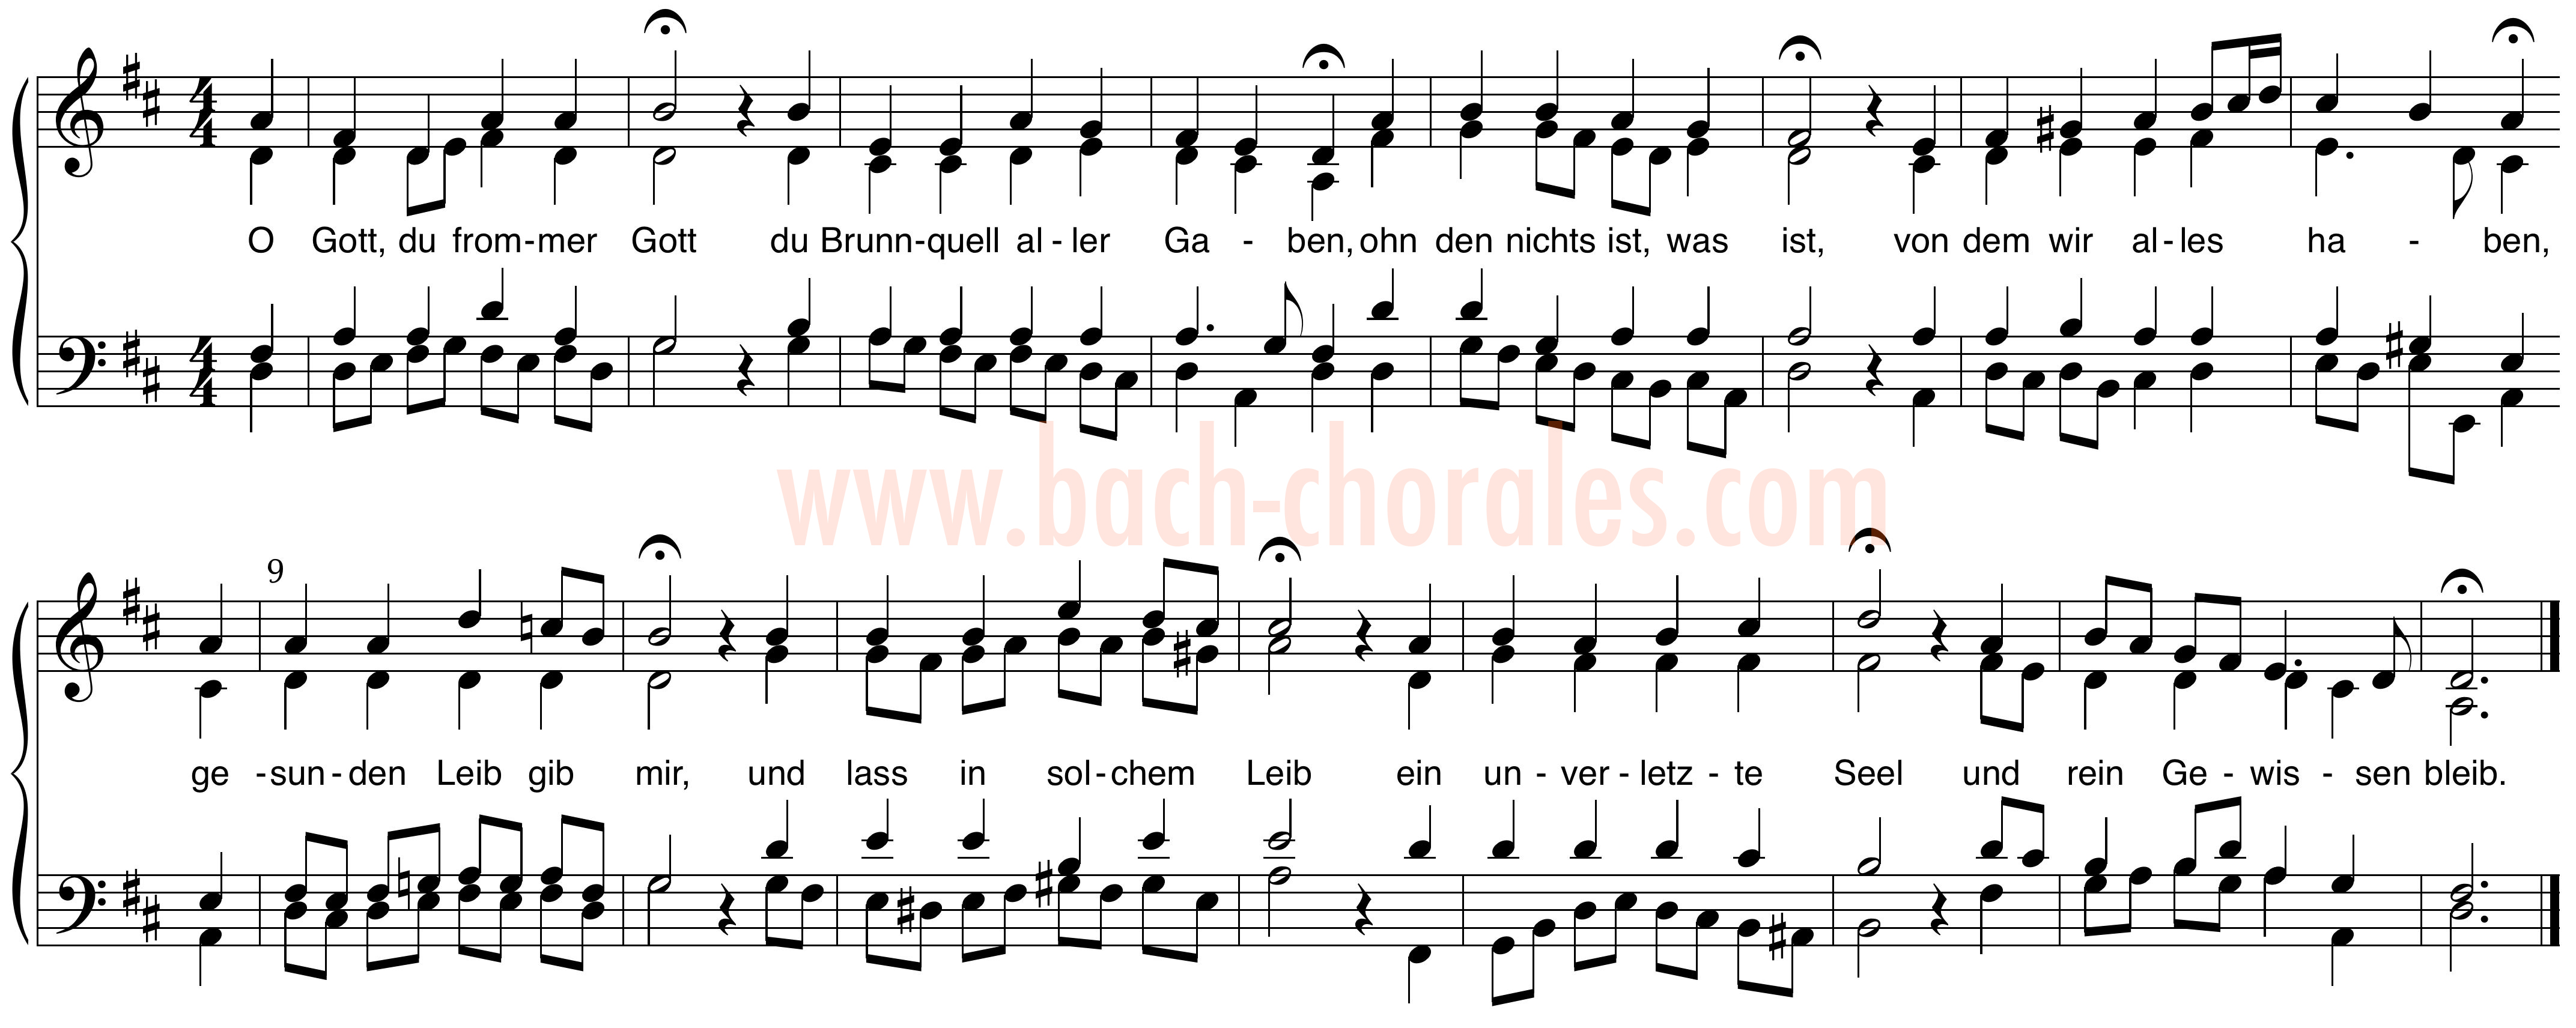 notenbeeld BWV 398 op https://www.bach-chorales.com/